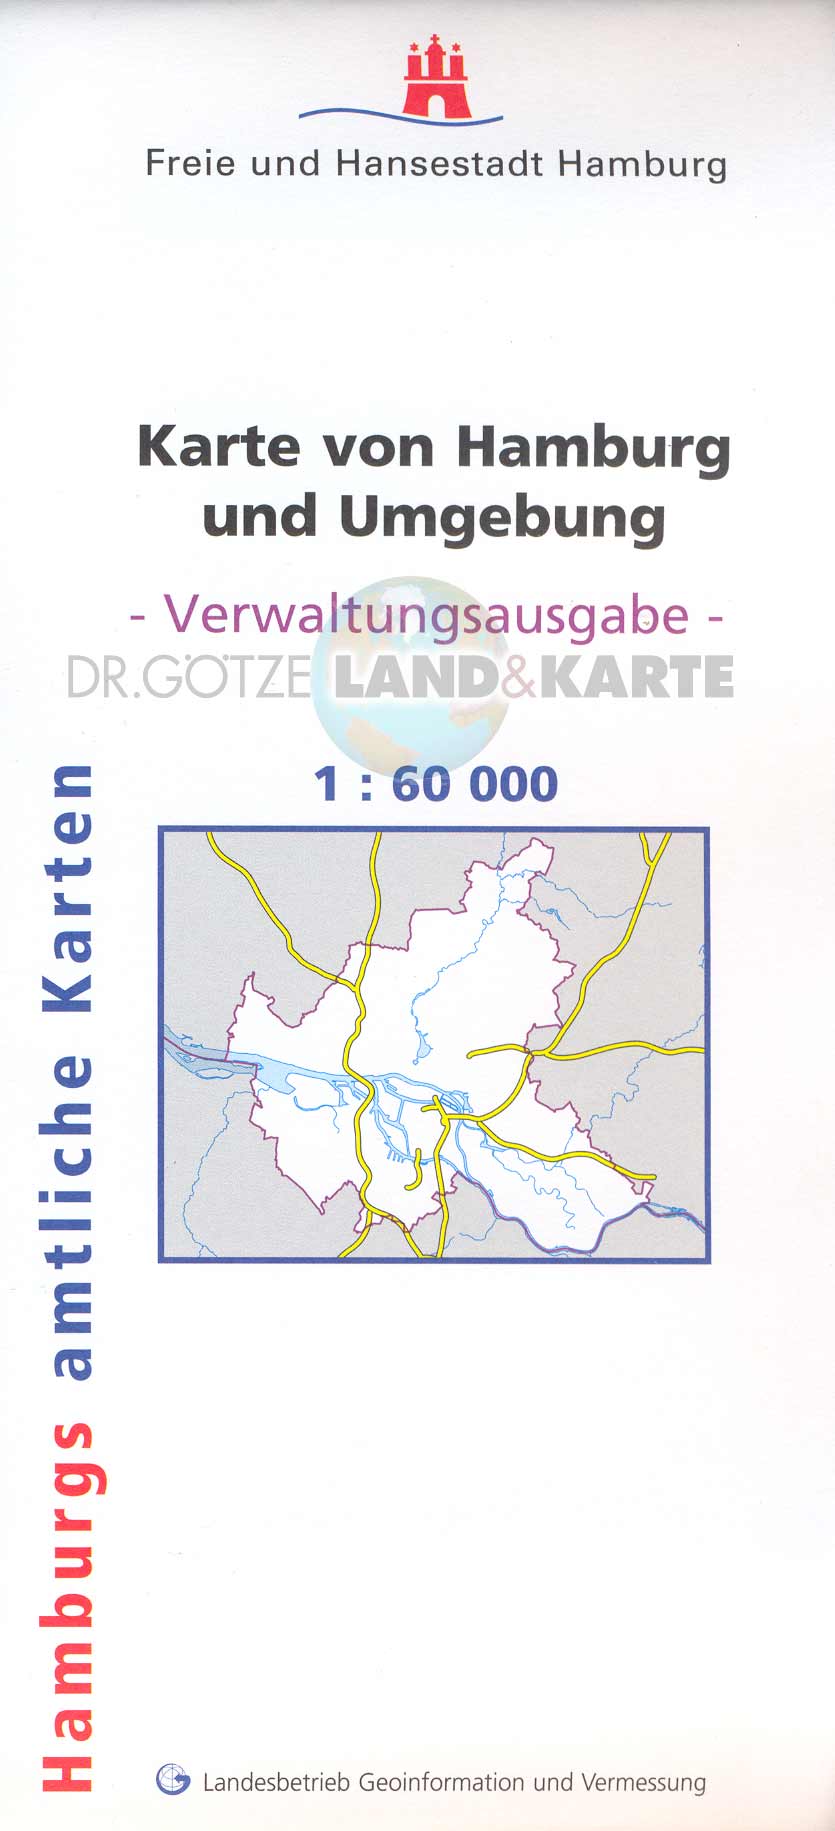 Verwaltungskarte Hamburg 1:60.000 gerollt - gerahmter Aufzug